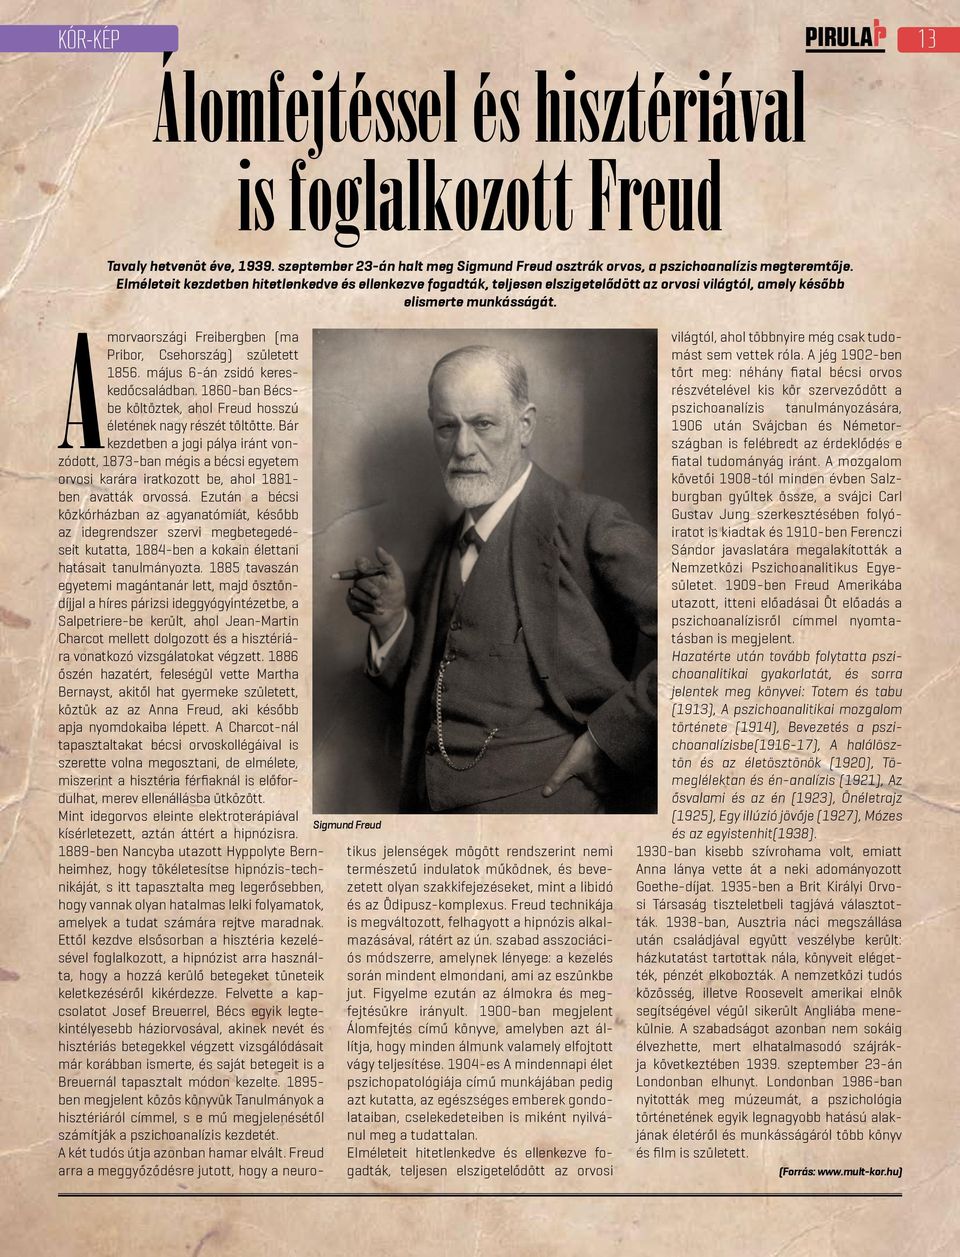 Amorvaországi Freibergben (ma Pribor, Csehország) született 1856. május 6-án zsidó kereskedőcsaládban. 1860-ban Bécsbe költöztek, ahol Freud hosszú életének nagy részét töltötte.